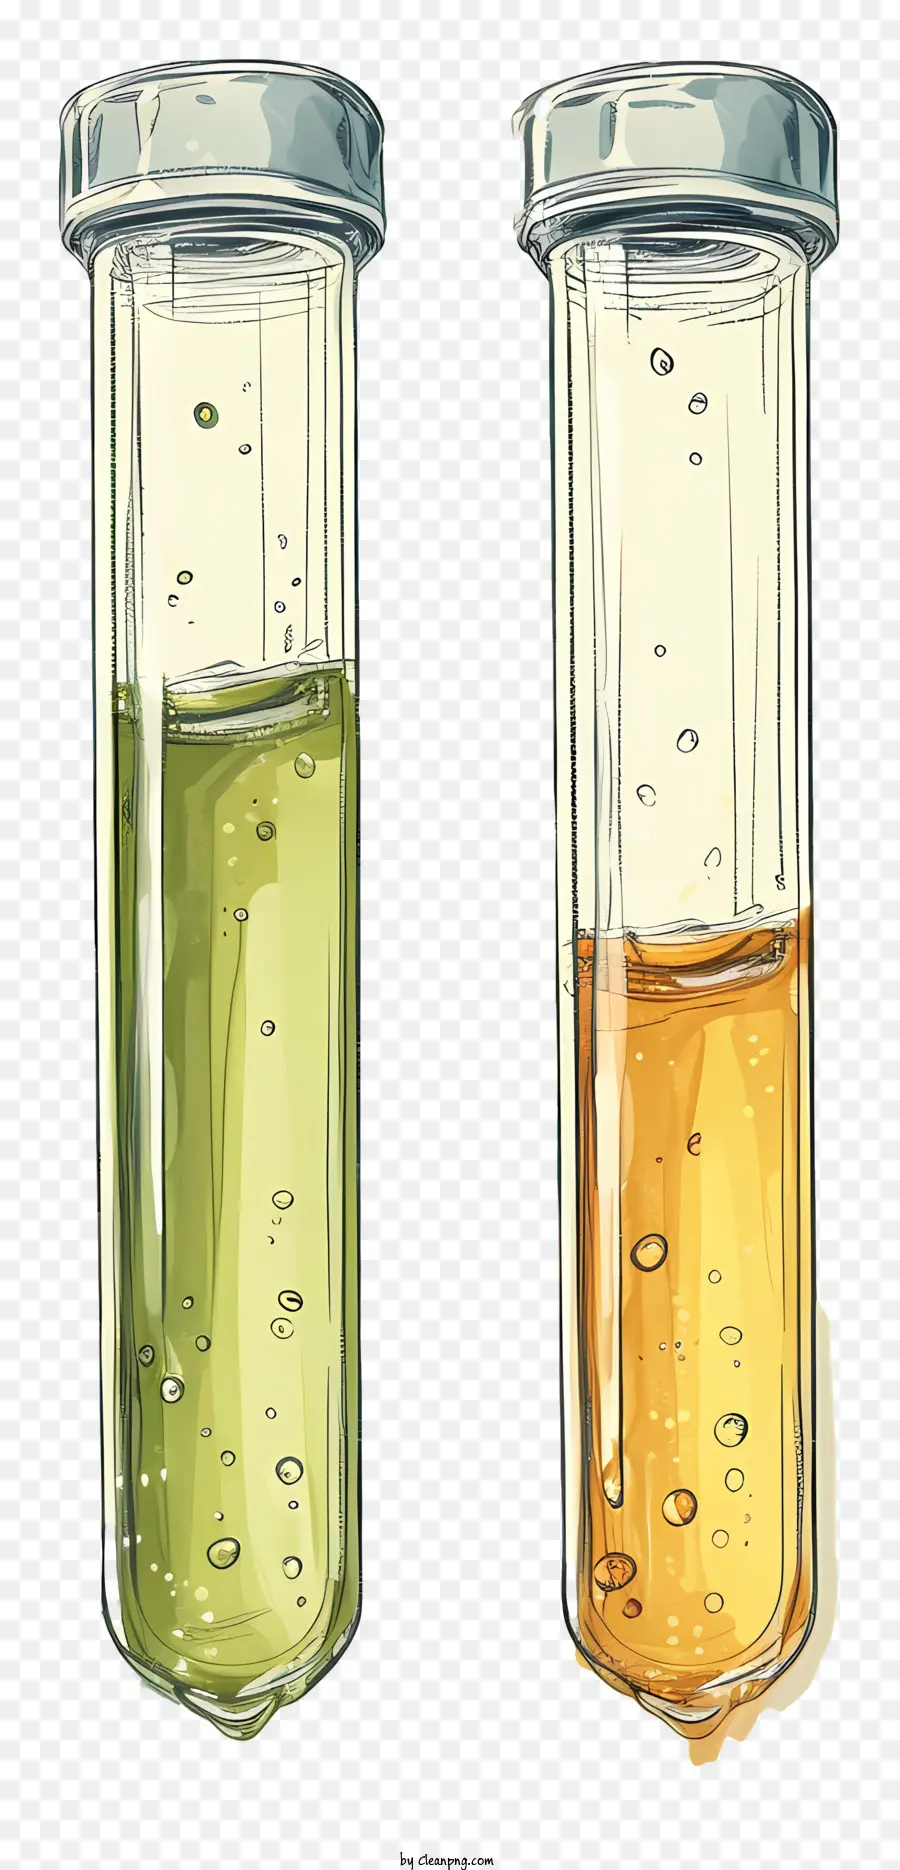 ống kiểm tra cốc thủy tinh chất lỏng màu vàng môi trường phòng thí nghiệm chất lỏng - Hai cốc có chất lỏng màu vàng và màu xanh lá cây